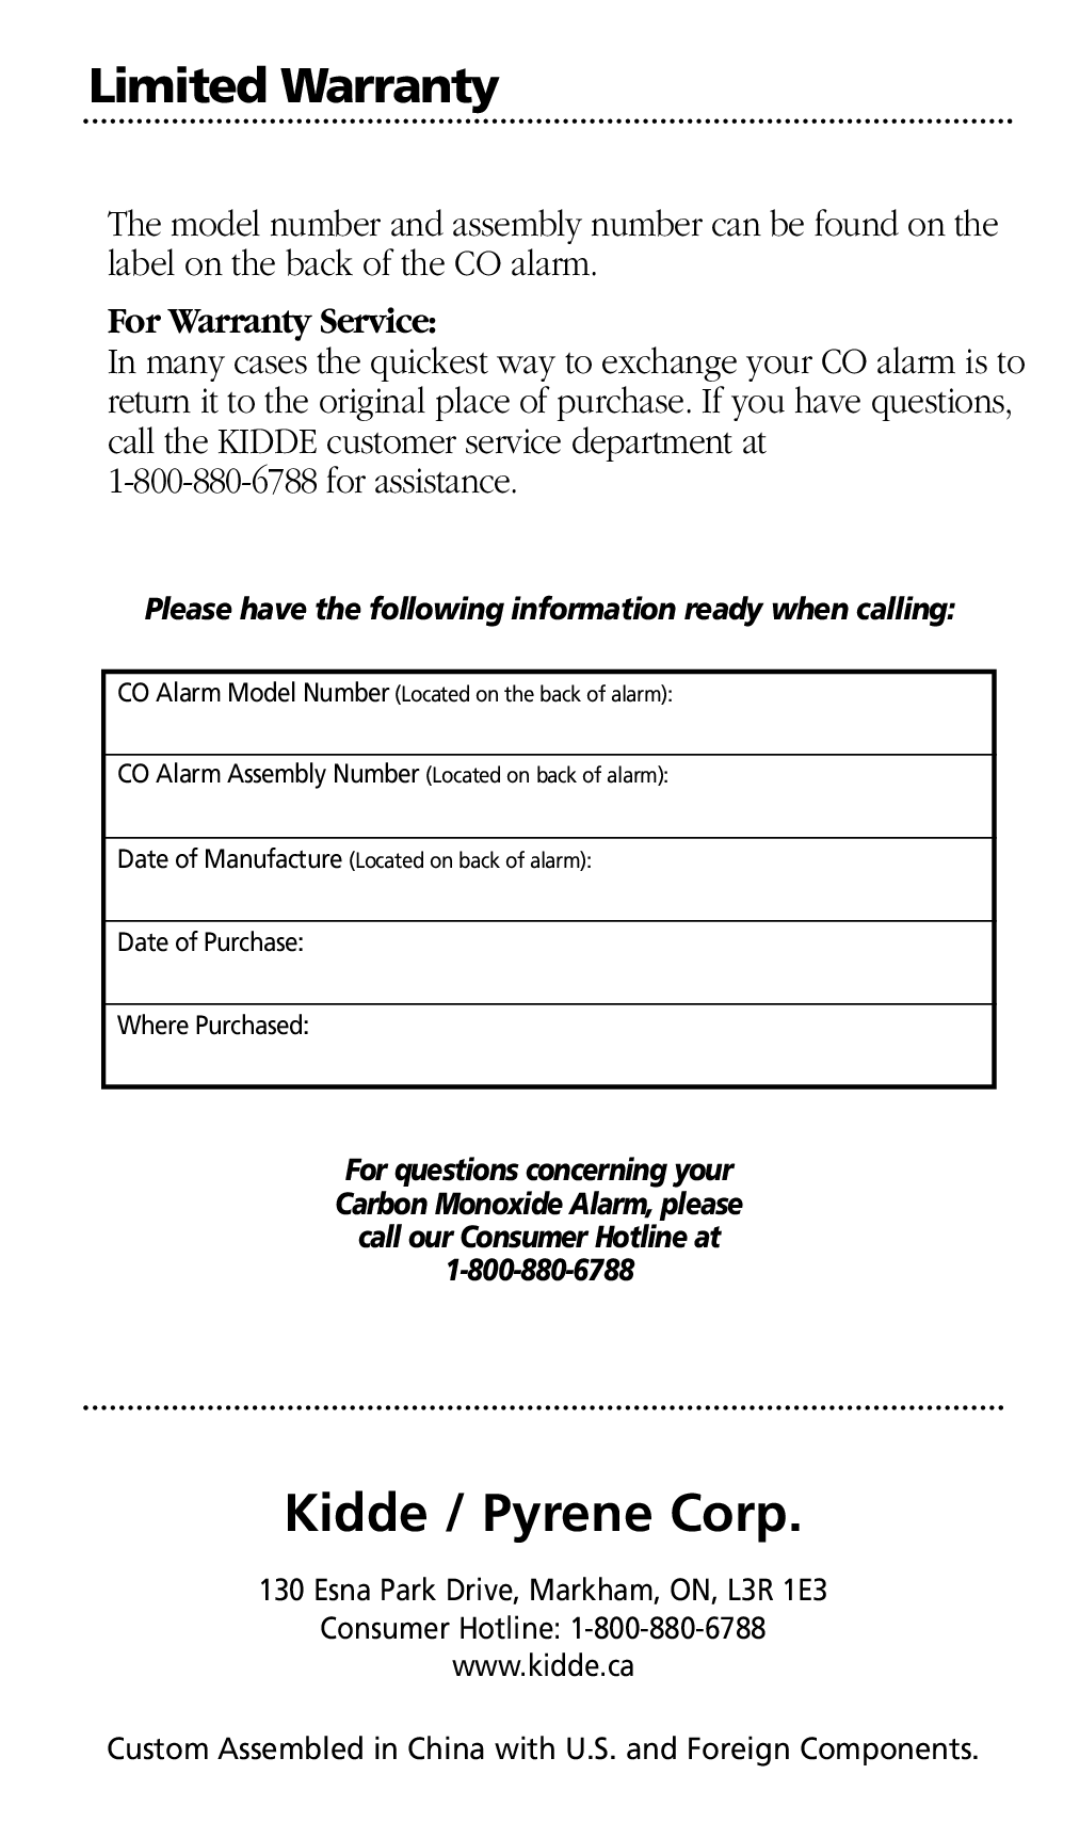 Kidde KN-OOB-B manual Kidde / Pyrene Corp, Limited Warranty, For Warranty Service 